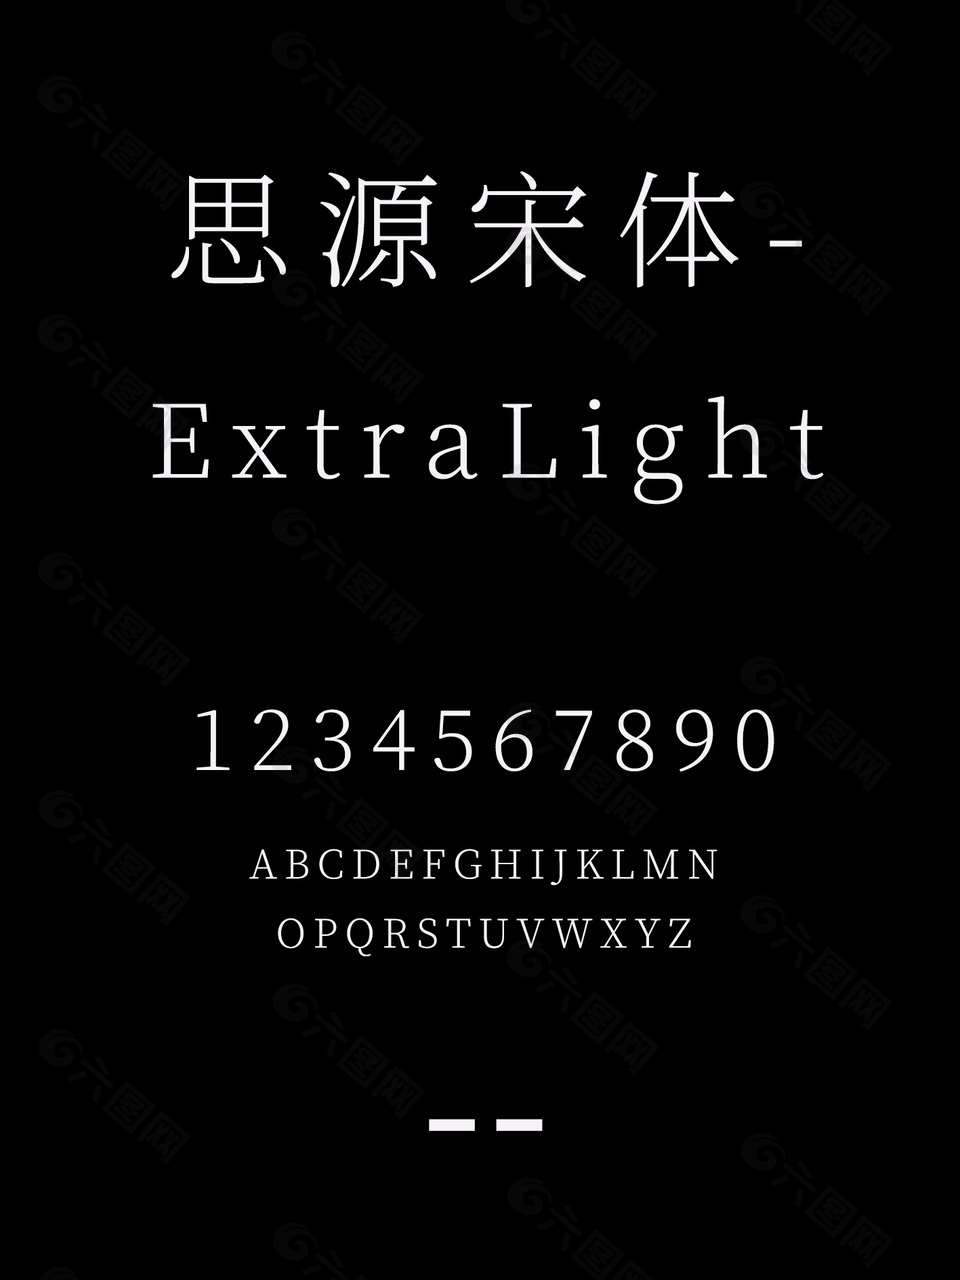 思源宋体-ExtraLight字体包下载